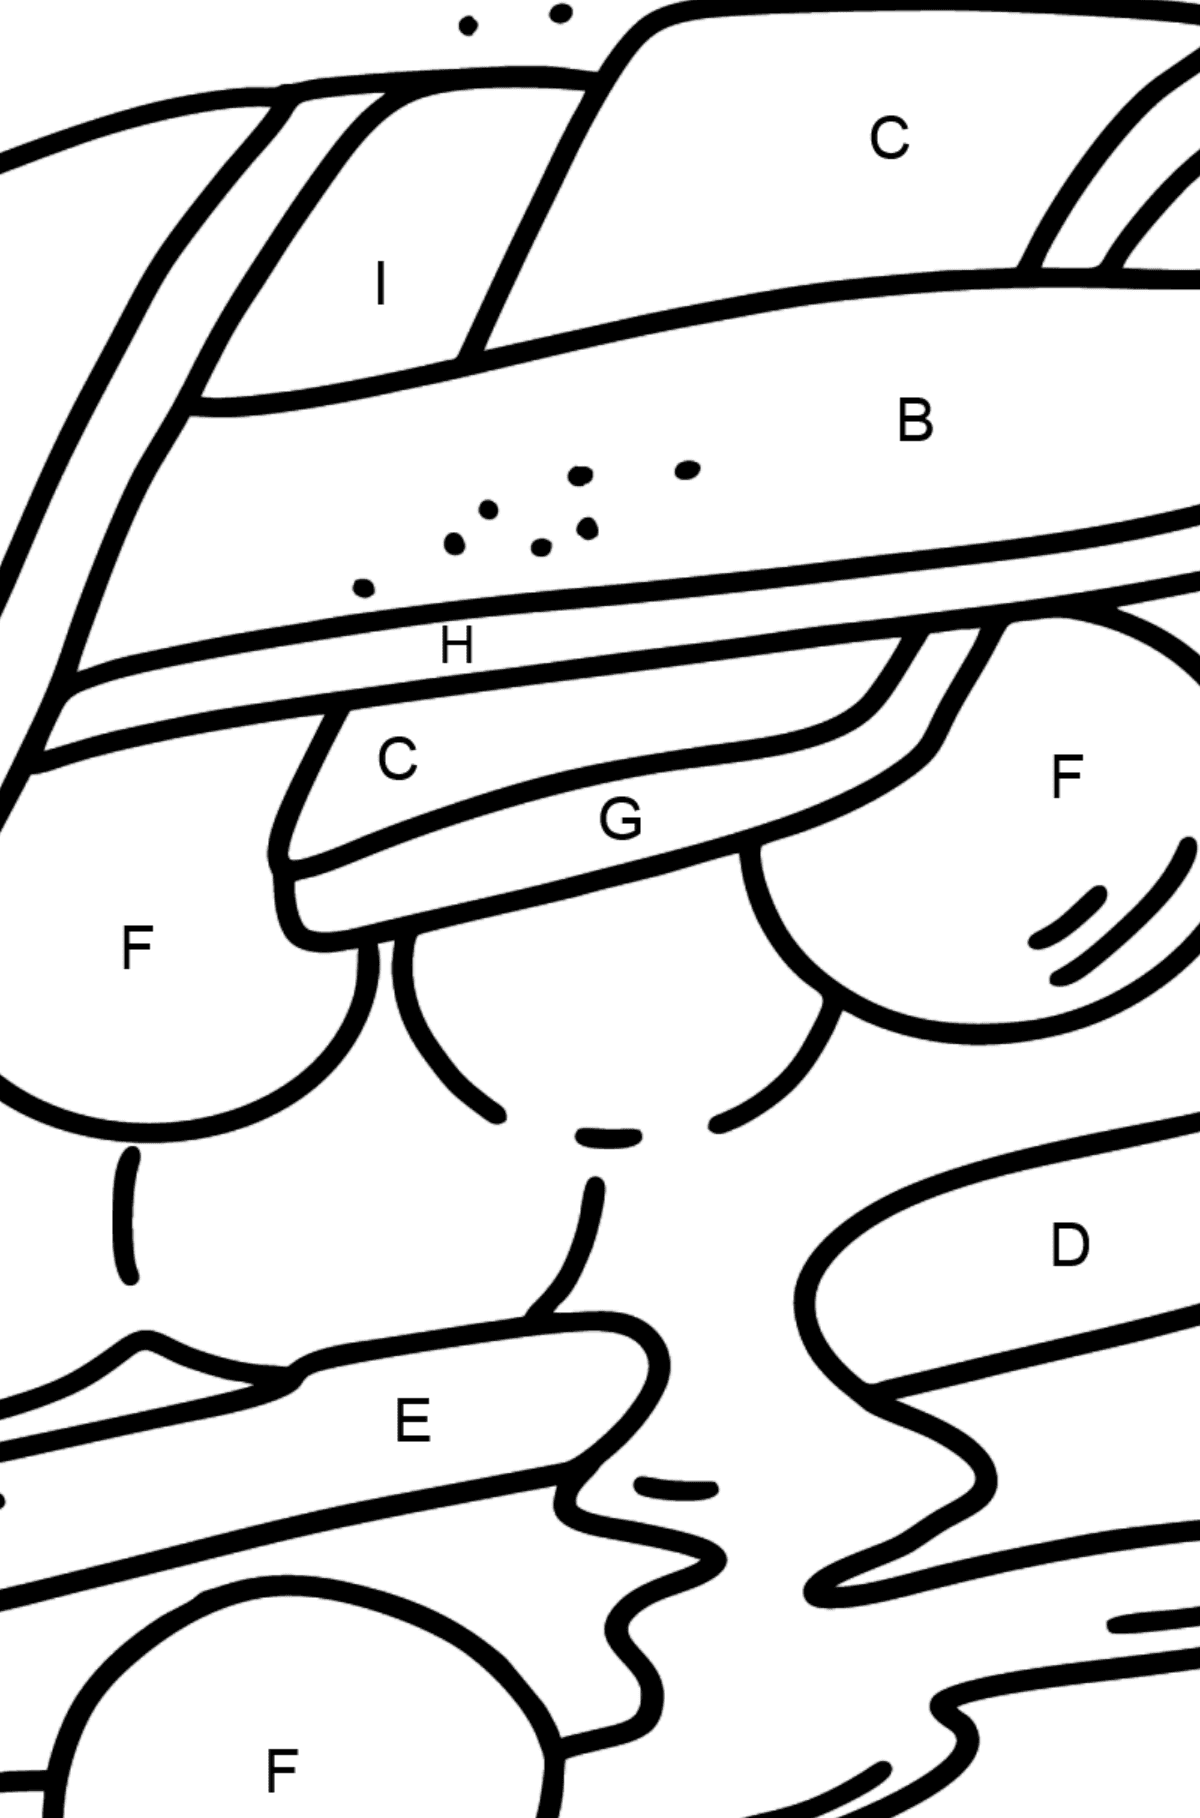 Ausmalbild: Beerenkuchen - Ausmalen nach Buchstaben für Kinder